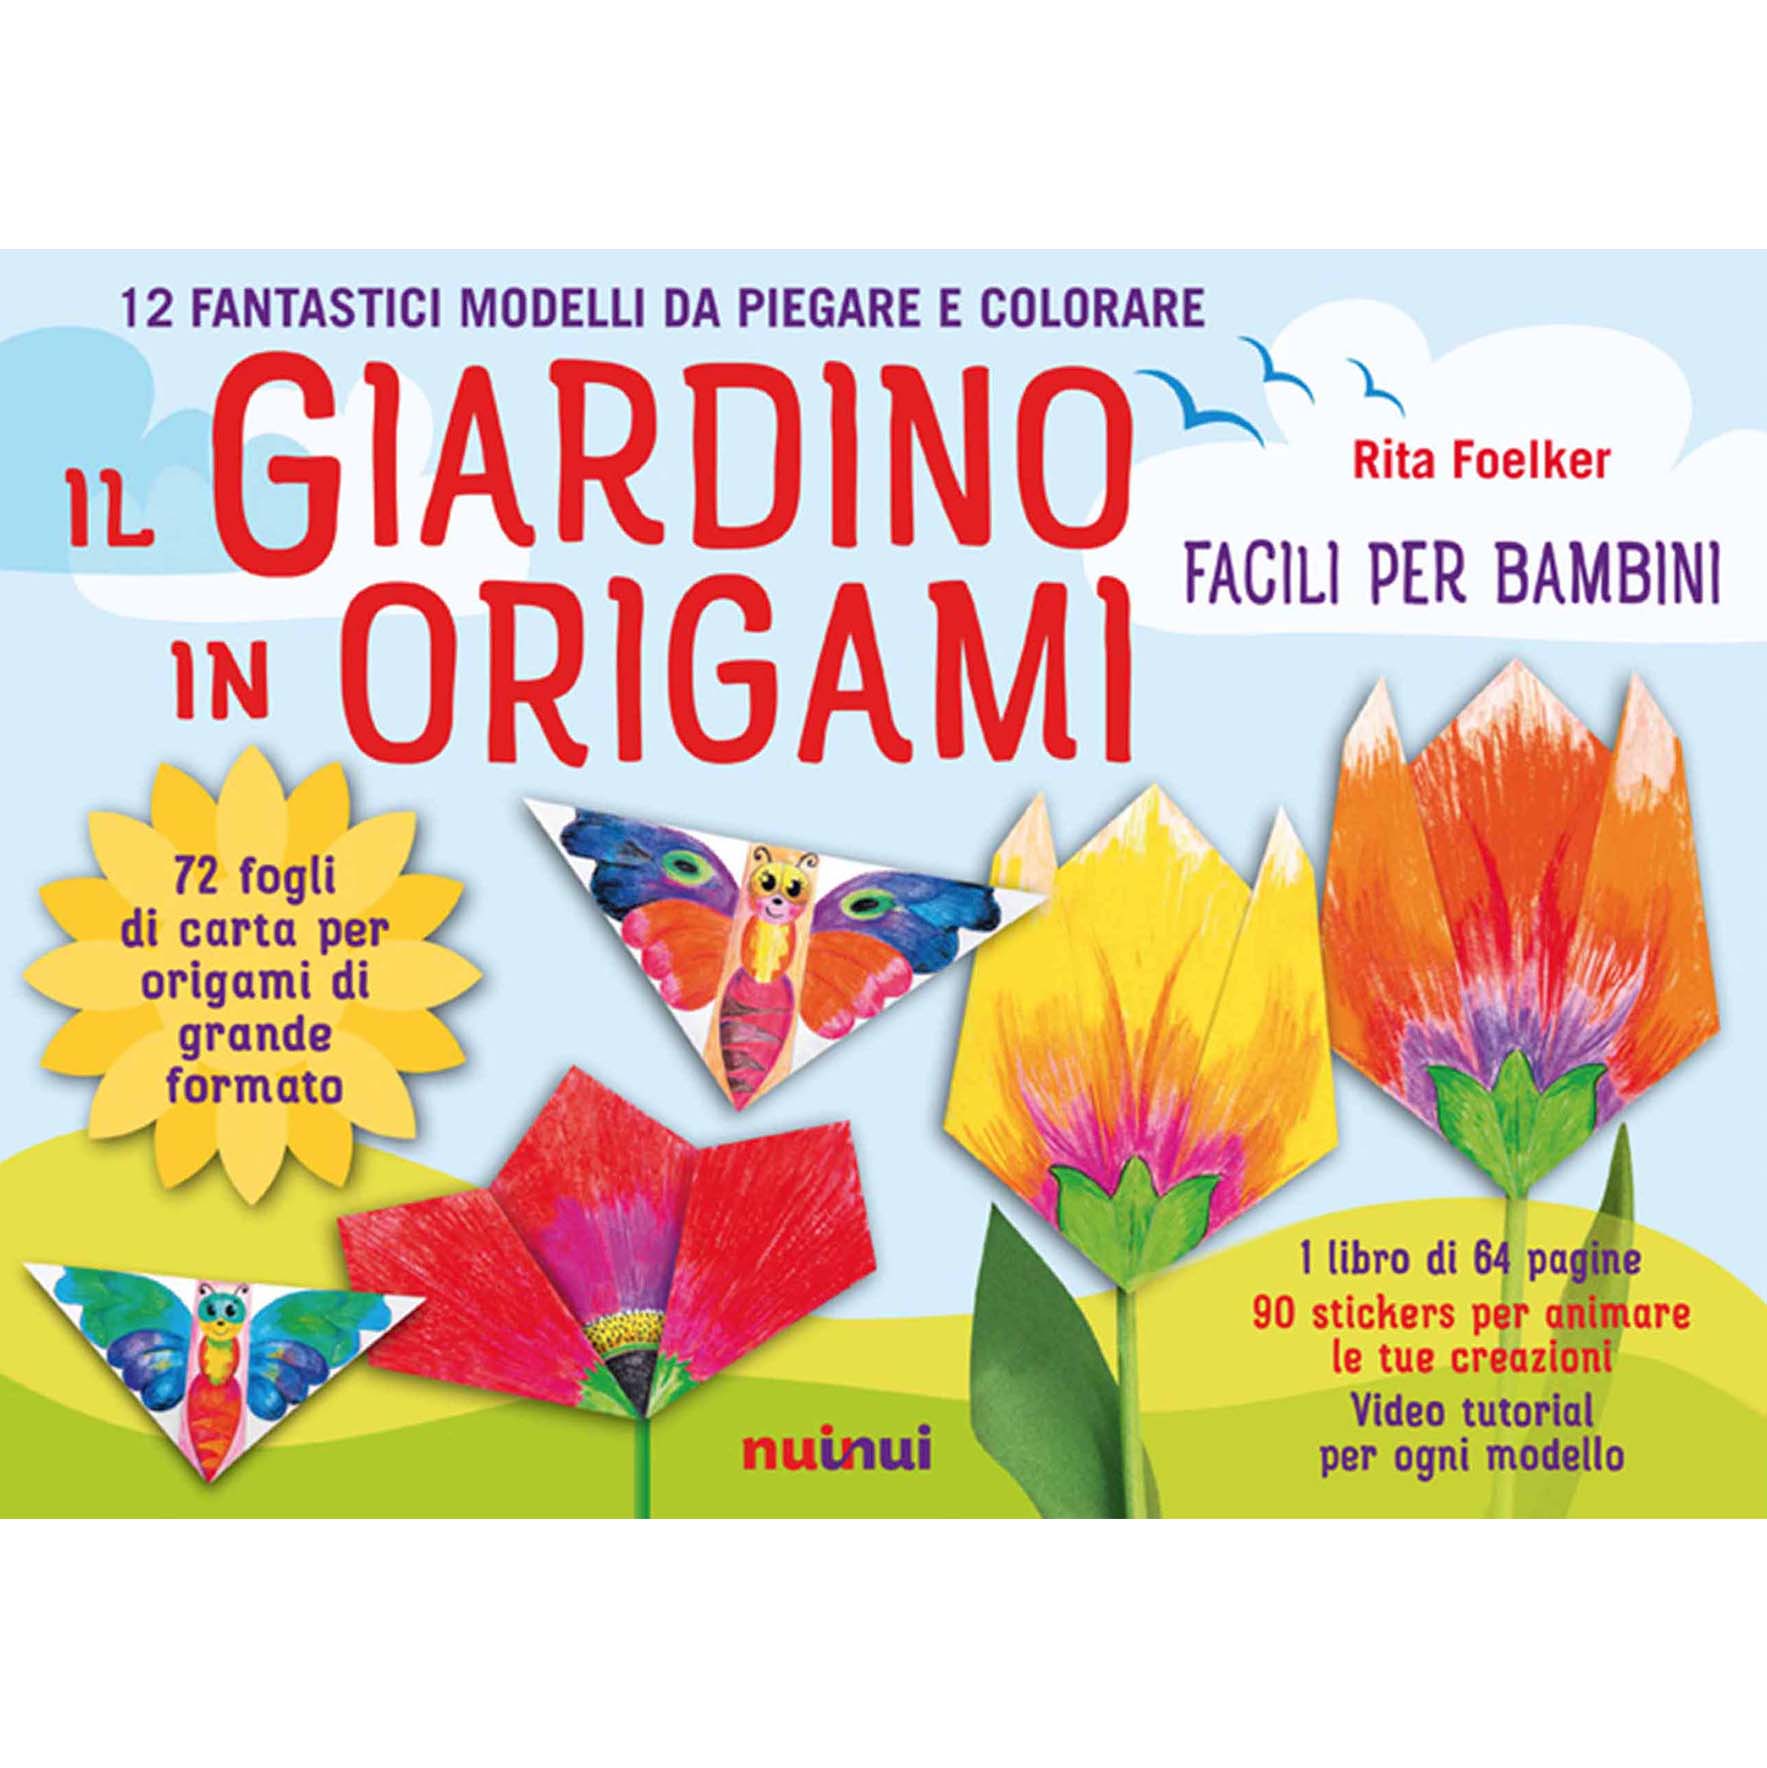 The origami garden - Easy for children